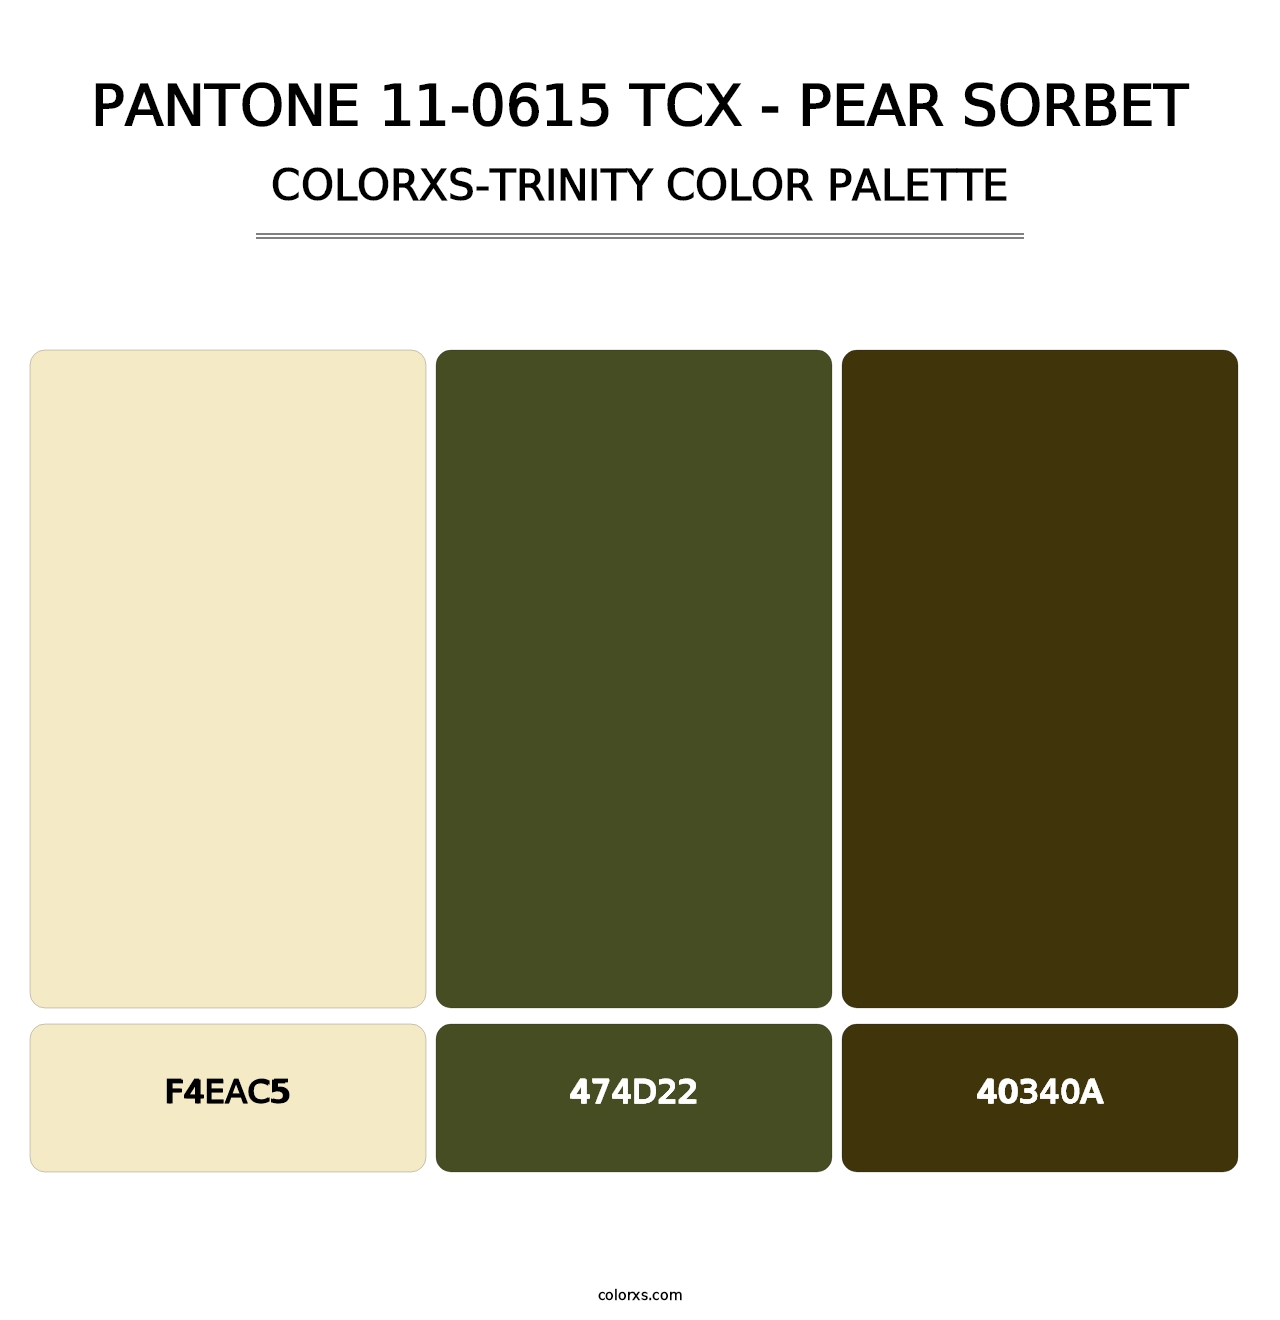 PANTONE 11-0615 TCX - Pear Sorbet - Colorxs Trinity Palette